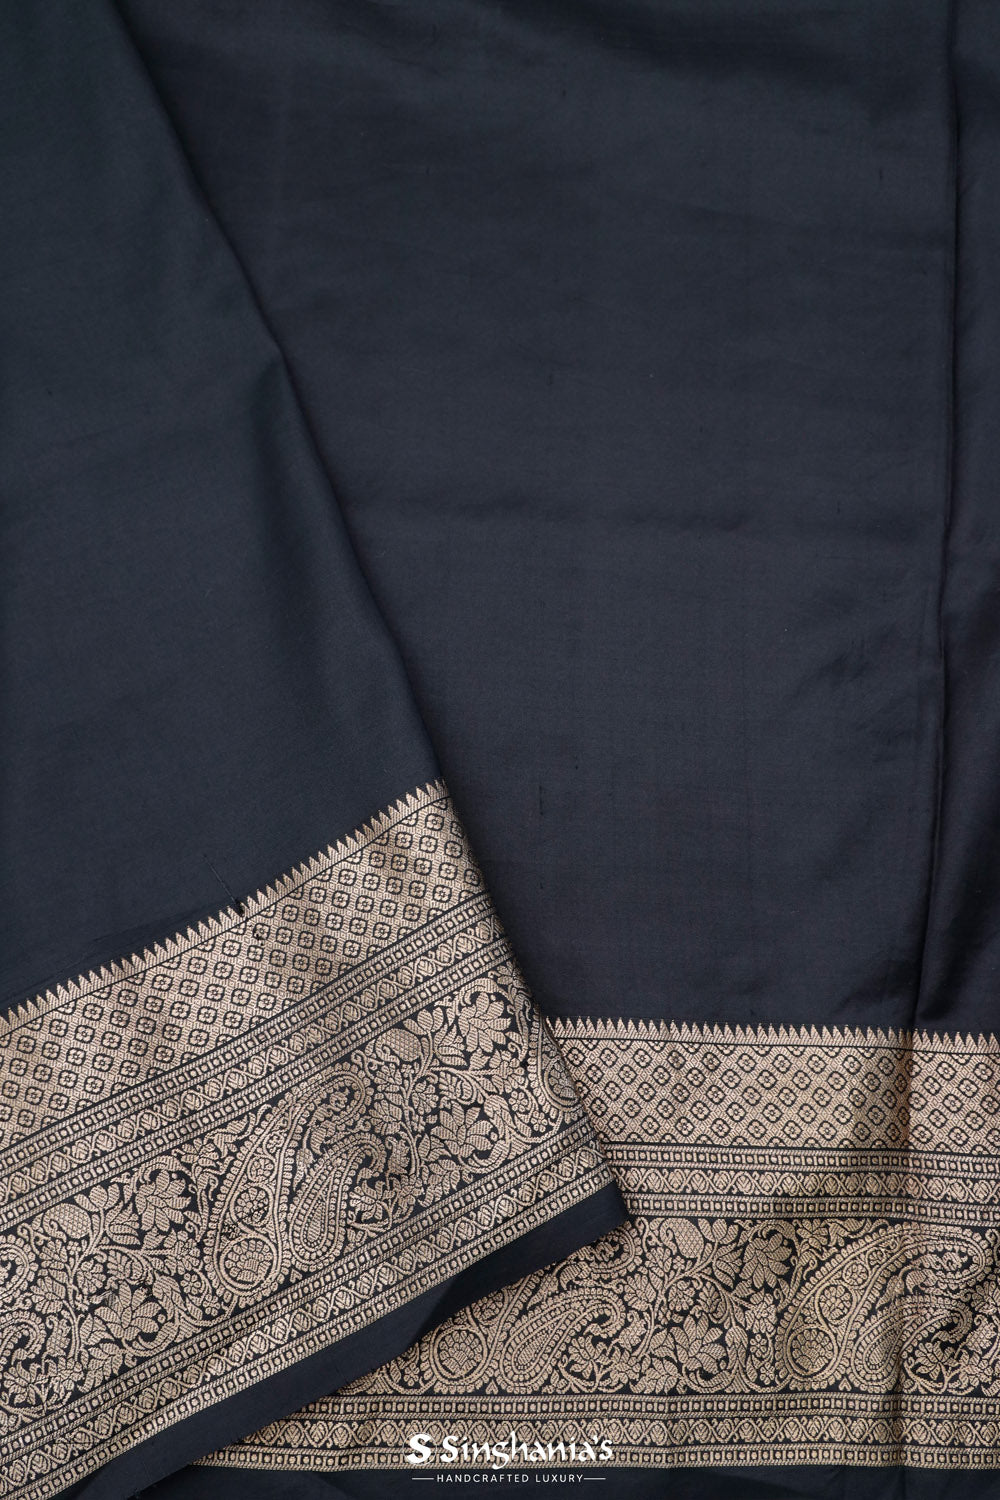 Bright White Printed Kanjivaram Silk Saree With Floral Design